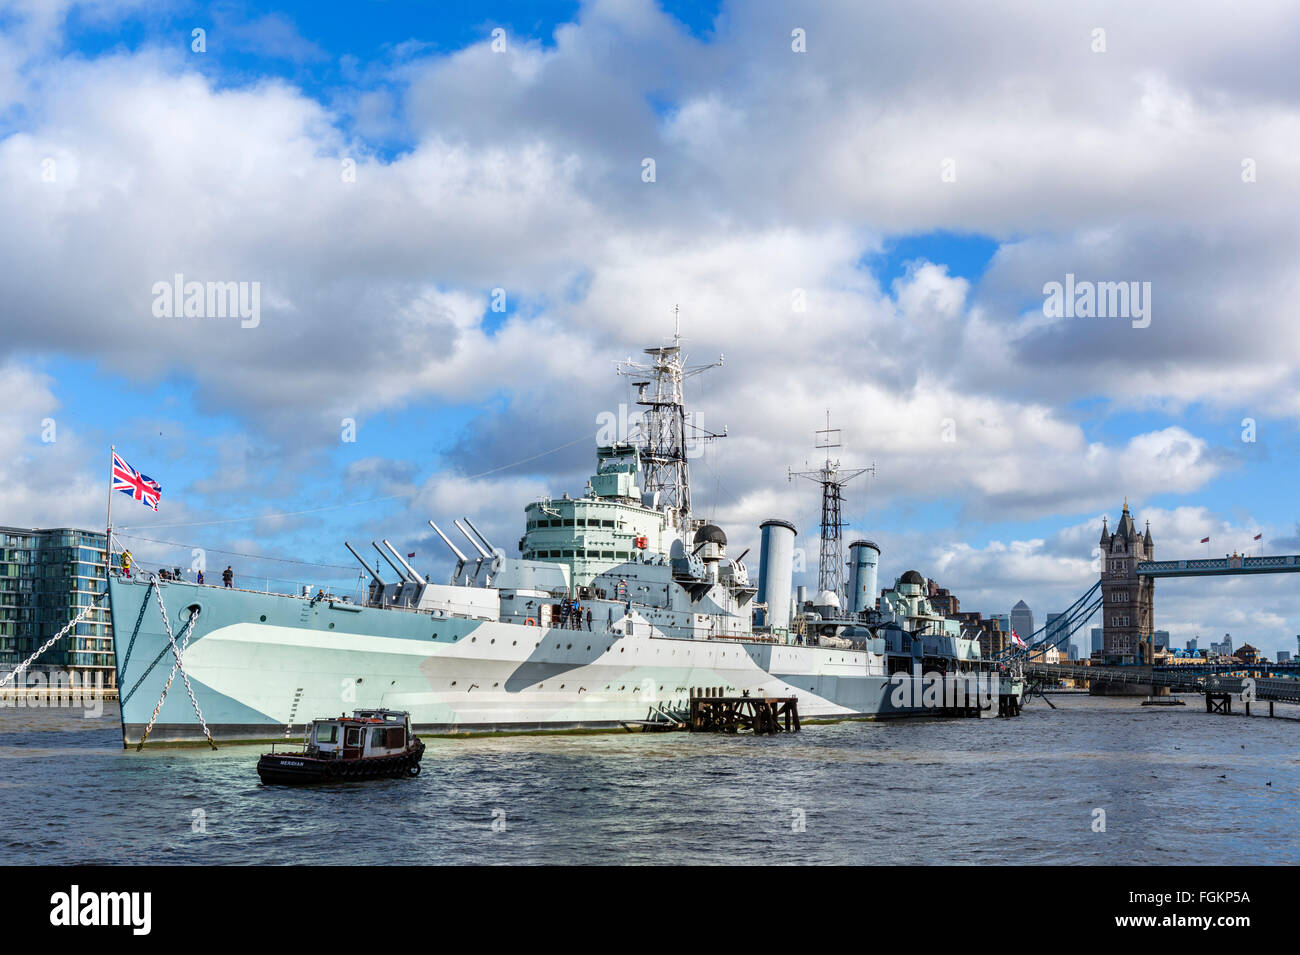 HMS Belfast, ein Museumsschiff vor Anker auf der Themse in der Nähe von Tower Bridge, London, England, UK Stockfoto